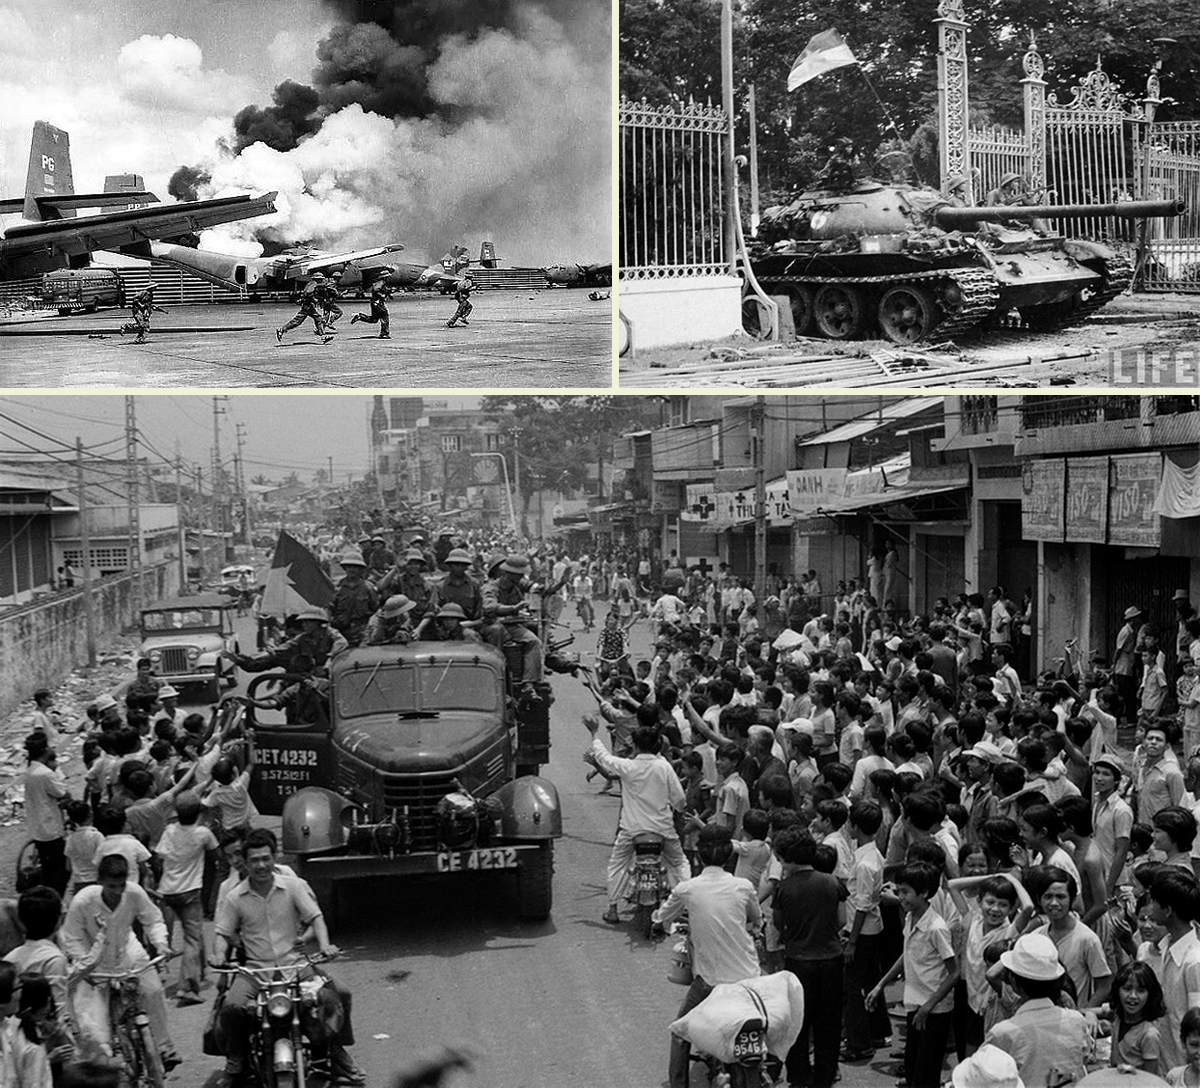 Quân giải phóng miền Nam tấn công sân bay Tân Sơn Nhất; Xe tăng quân giải phóng húc đổ cổng Dinh Độc lập; Nhân dân Sài Gòn đón chào quân Giải phóng tiến vào thành phố ngày 30/4/1975. Ảnh: TTXVN - Life